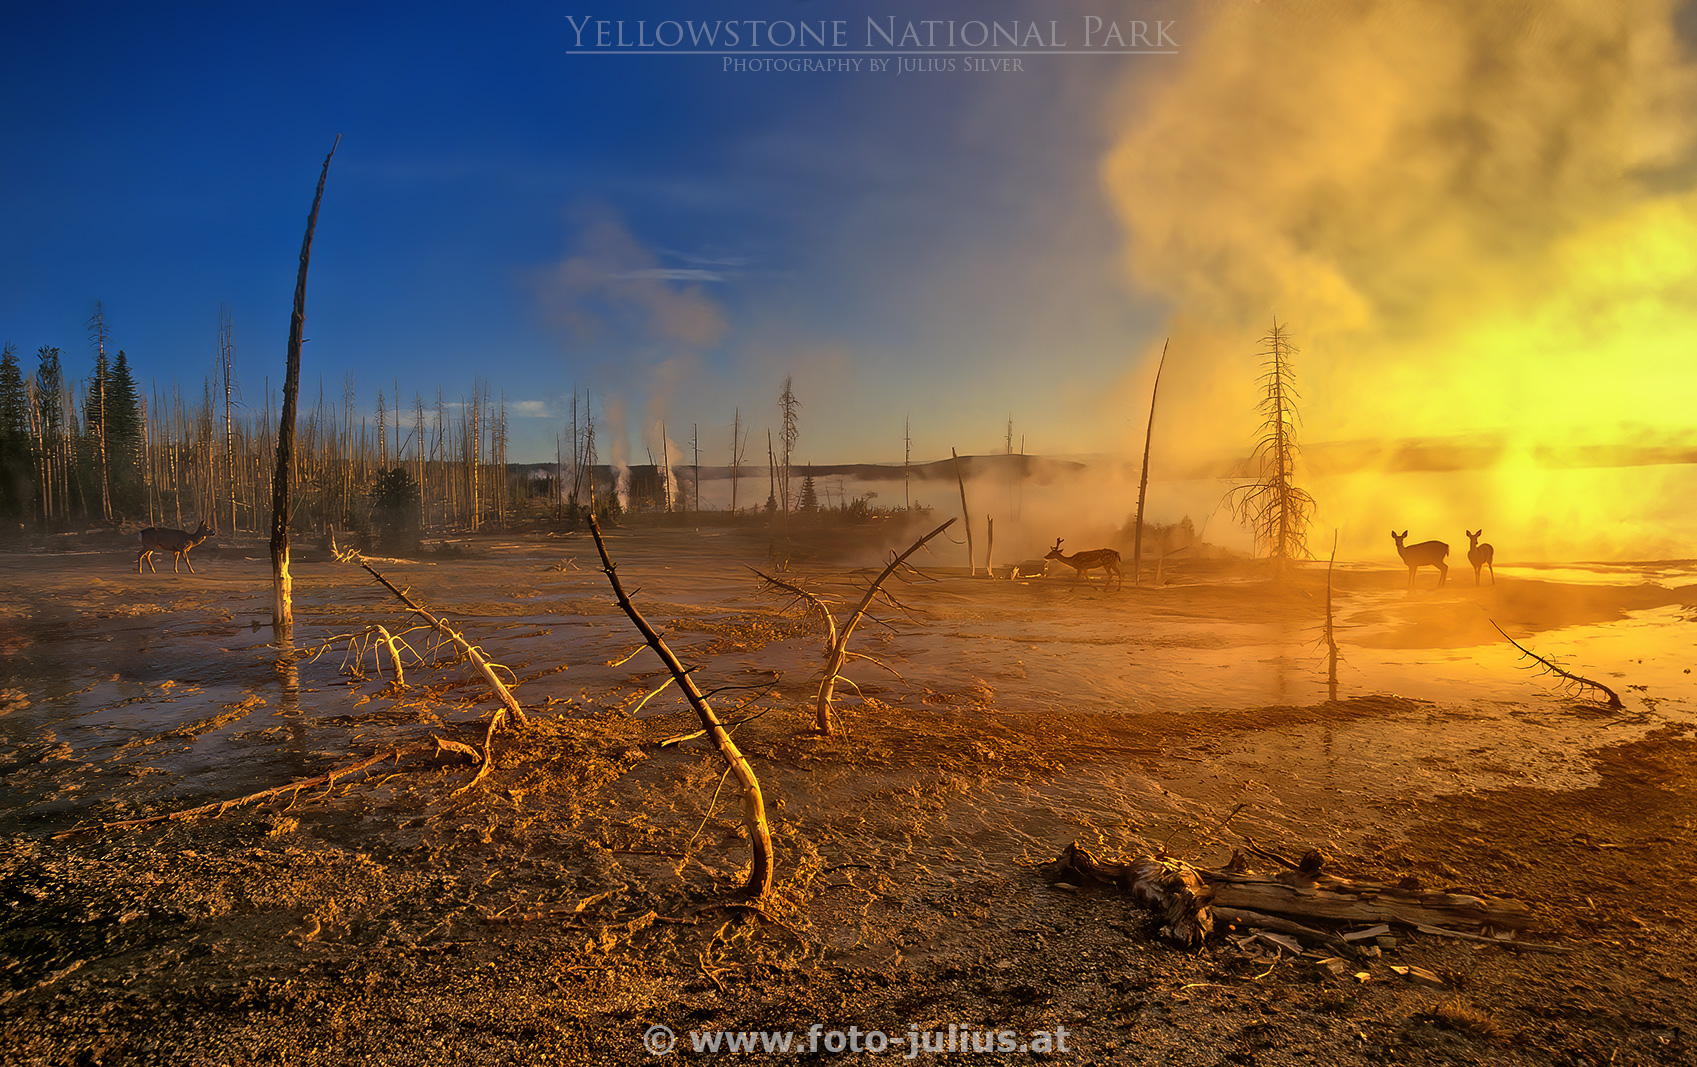 y004a_West_Thumb_Basin_Yellowstone.jpg, 986kB